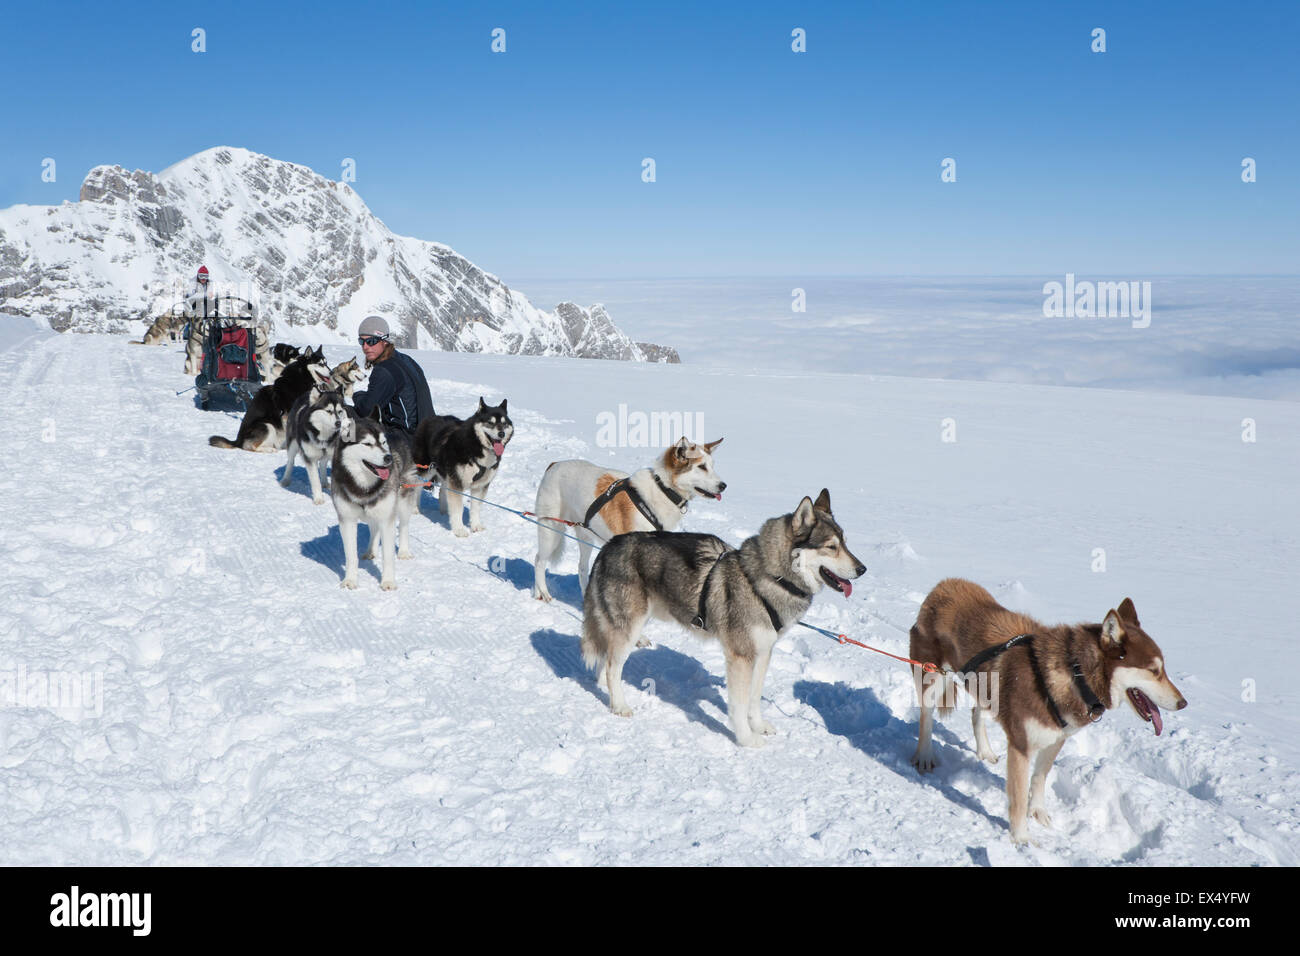 Les équipes de chiens de traîneau à chiens à l'arrêt de repos, montagnes et  paysages enneigés, Glacier du Dachstein, Salzbourg, Autriche Photo Stock -  Alamy